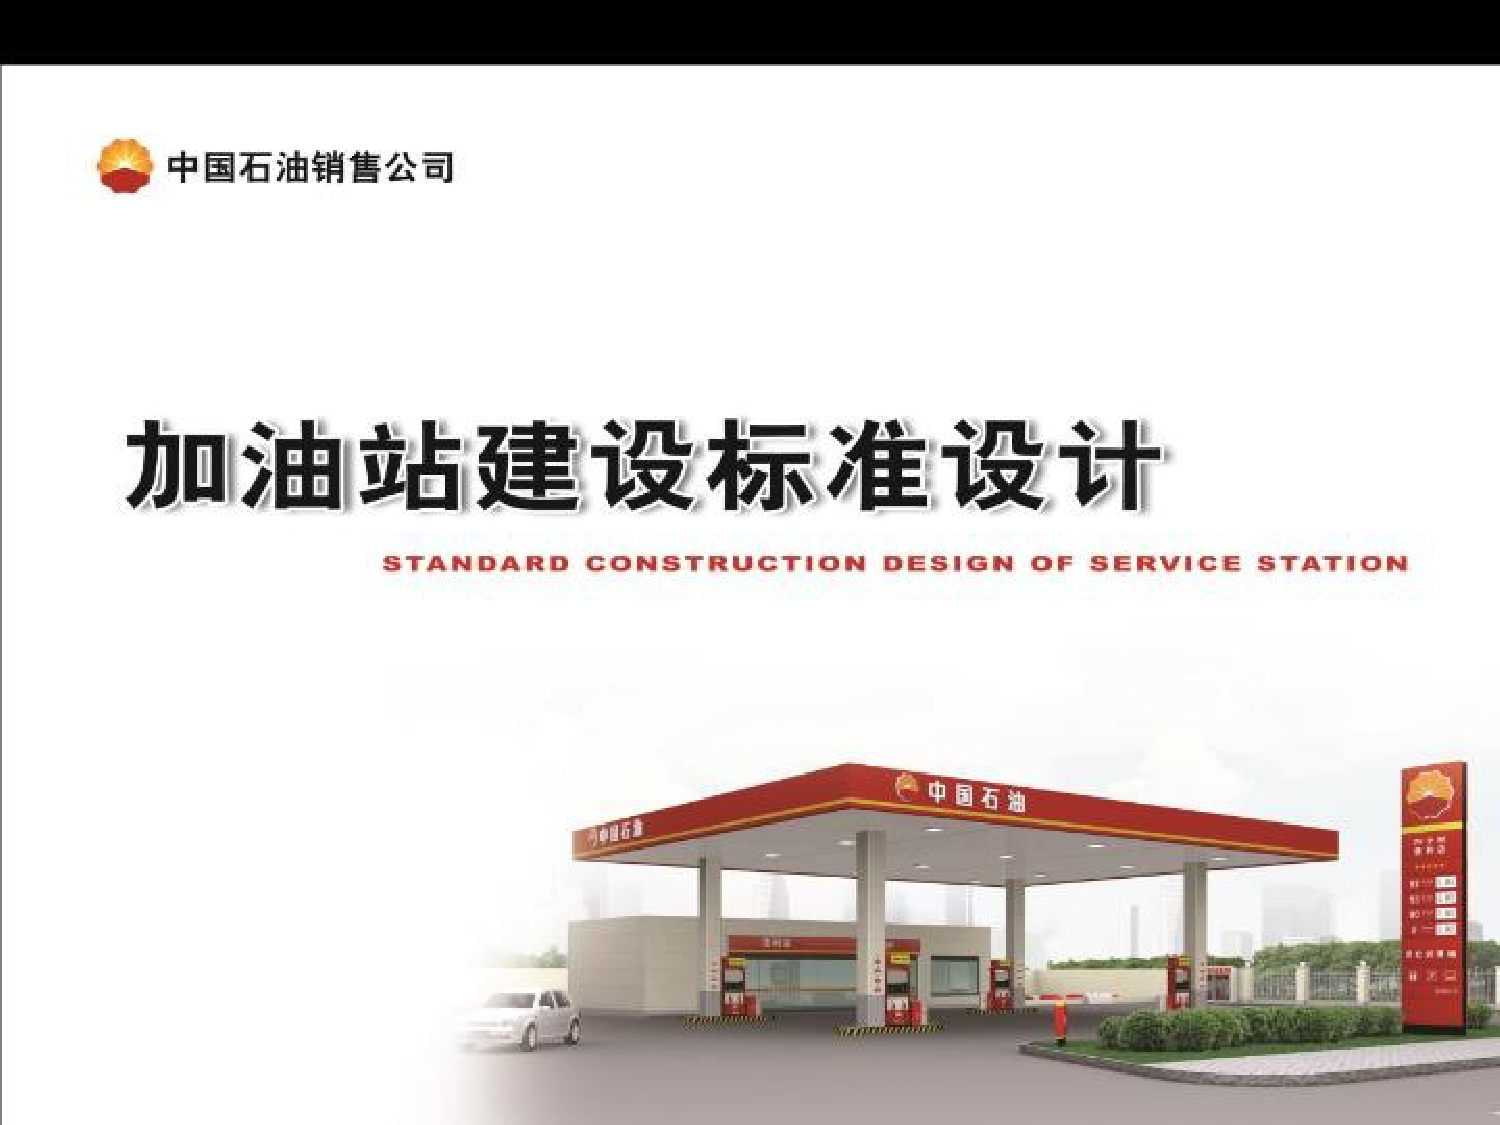 中国石油-加油站建设标准设计